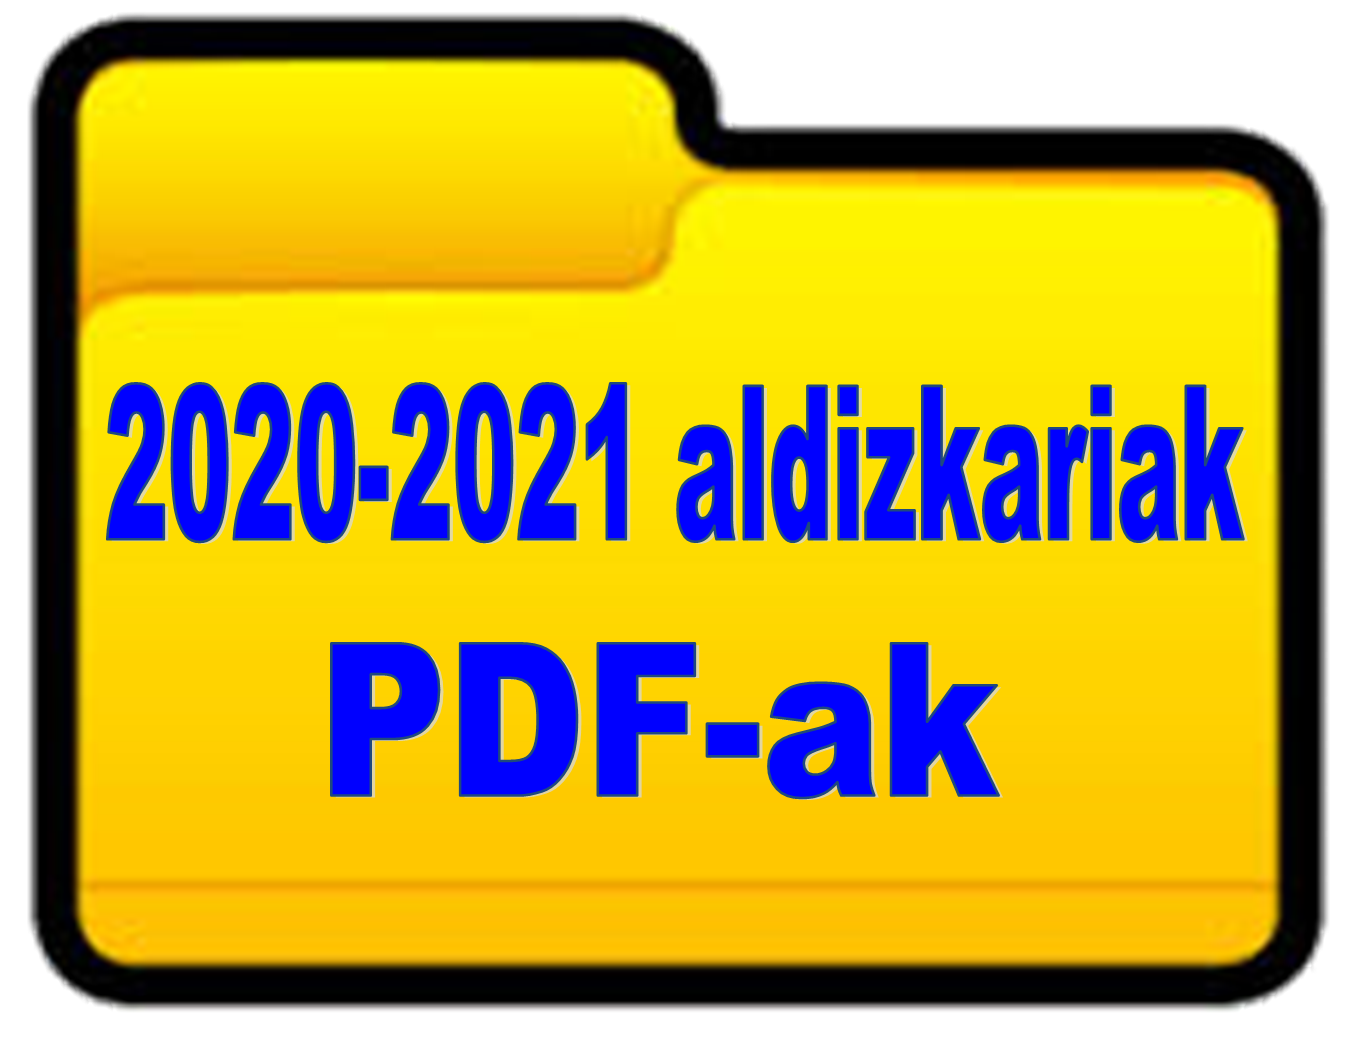 2020-2021 ALDIZKARIAK-PDF